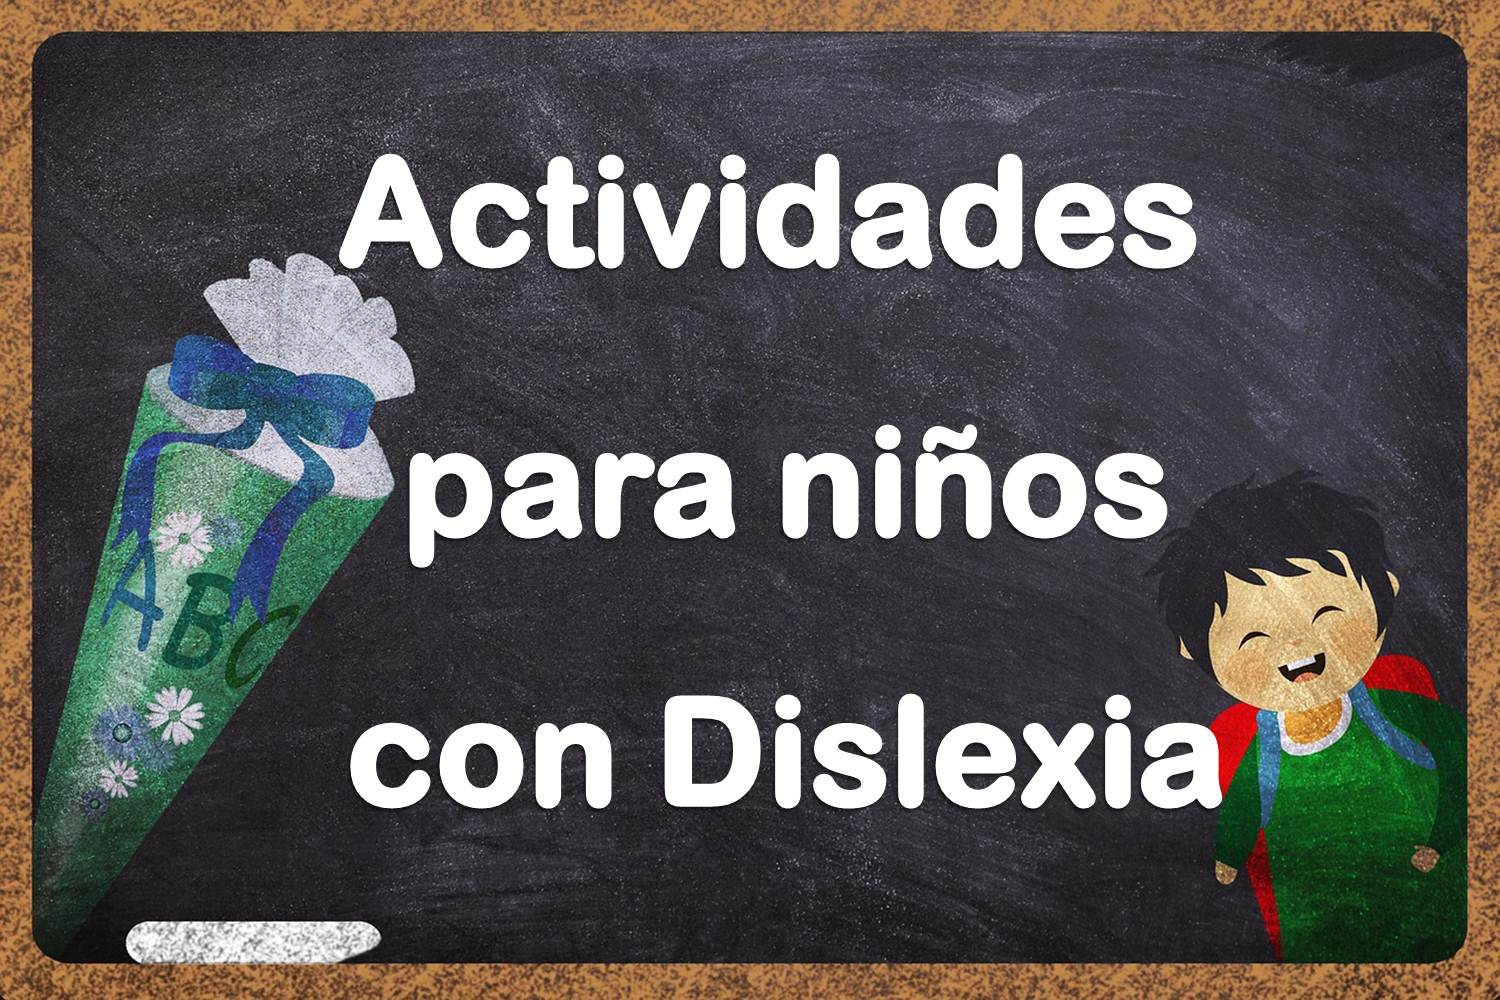 Actividades para niños con dislexia